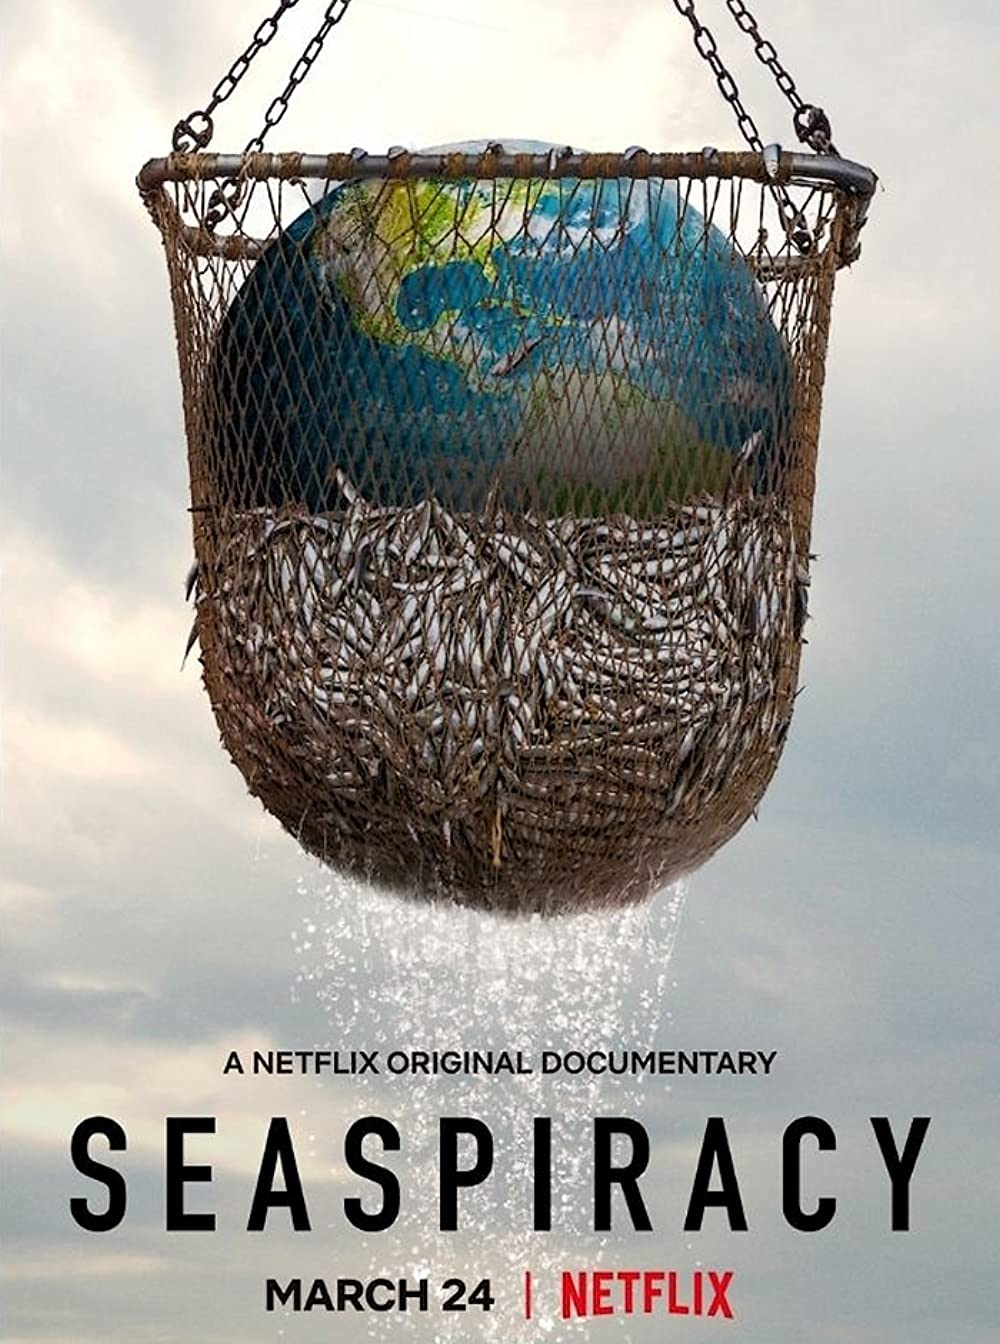 ดูหนังออนไลน์ ดูหนังใหม่ Netflix SEASPIRACY 2021 ใครทำร้ายทะเล 037hdmovie